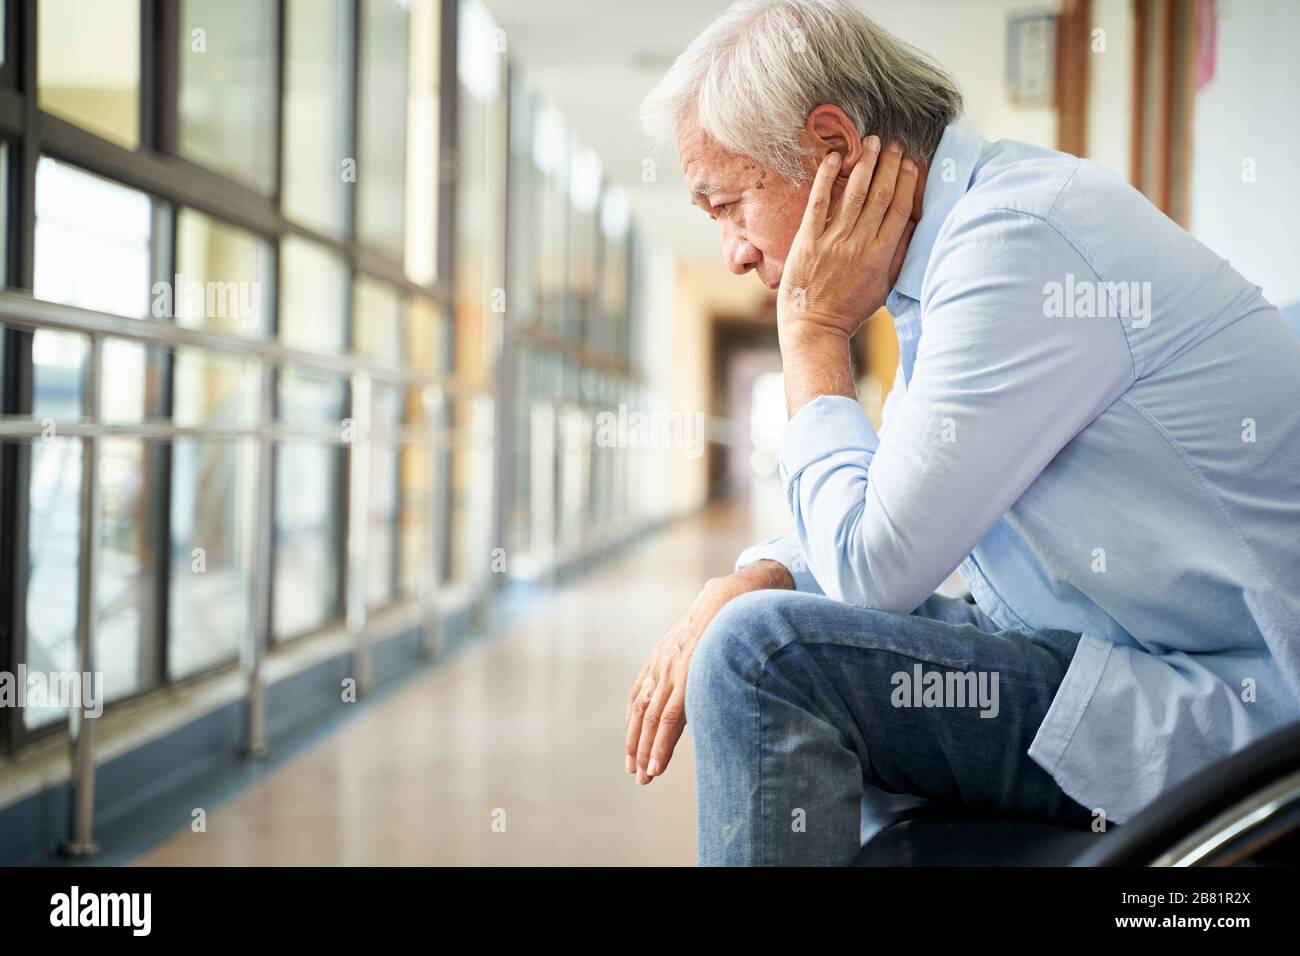 triste e devastato uomo anziano asiatico seduto da solo in corridoio vuoto dell'ospedale, testa in mano Foto Stock